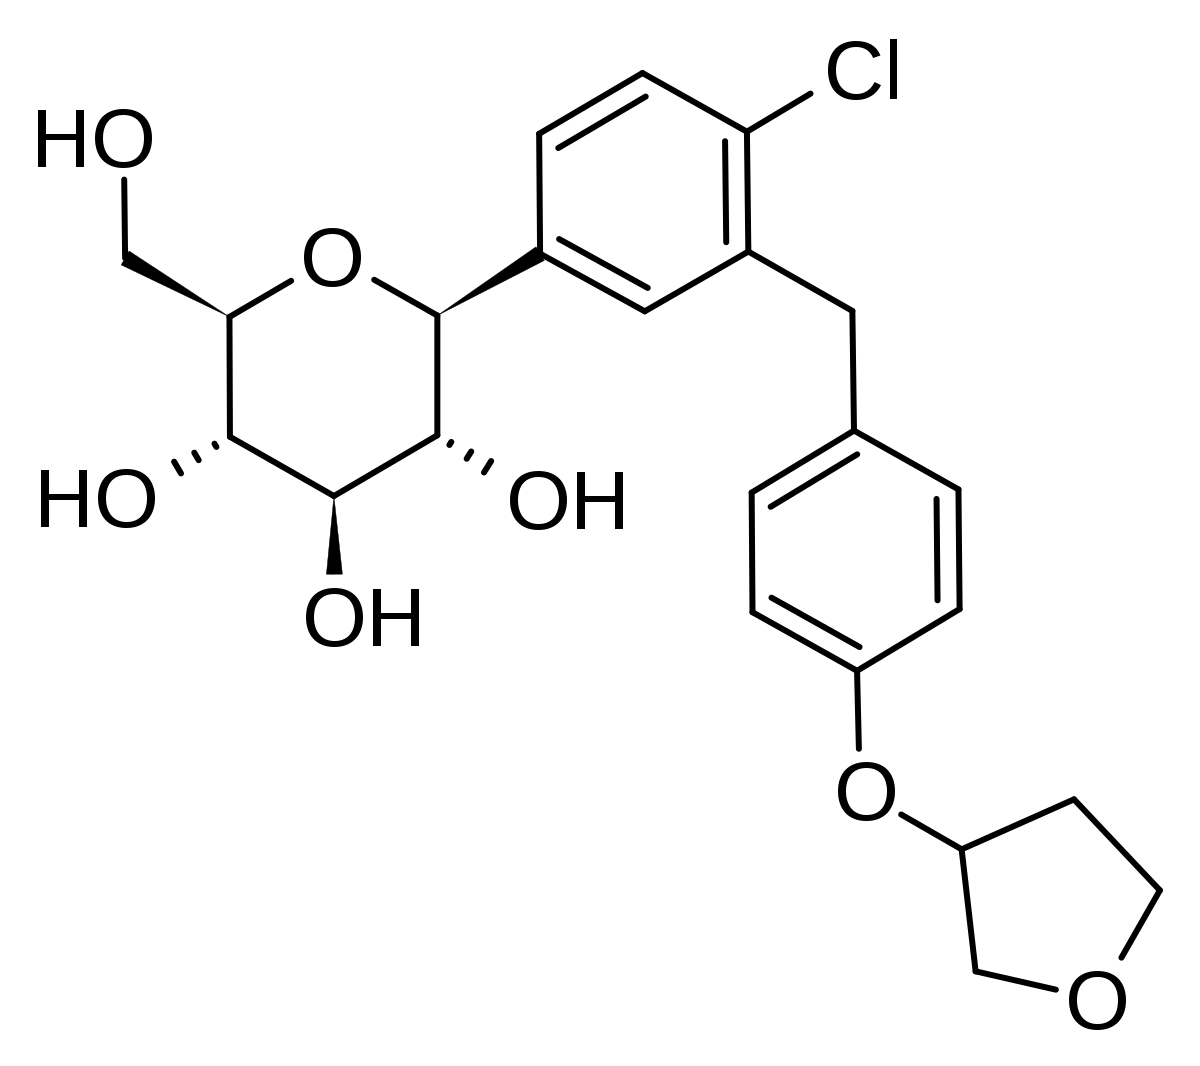 structure of empagliflozin